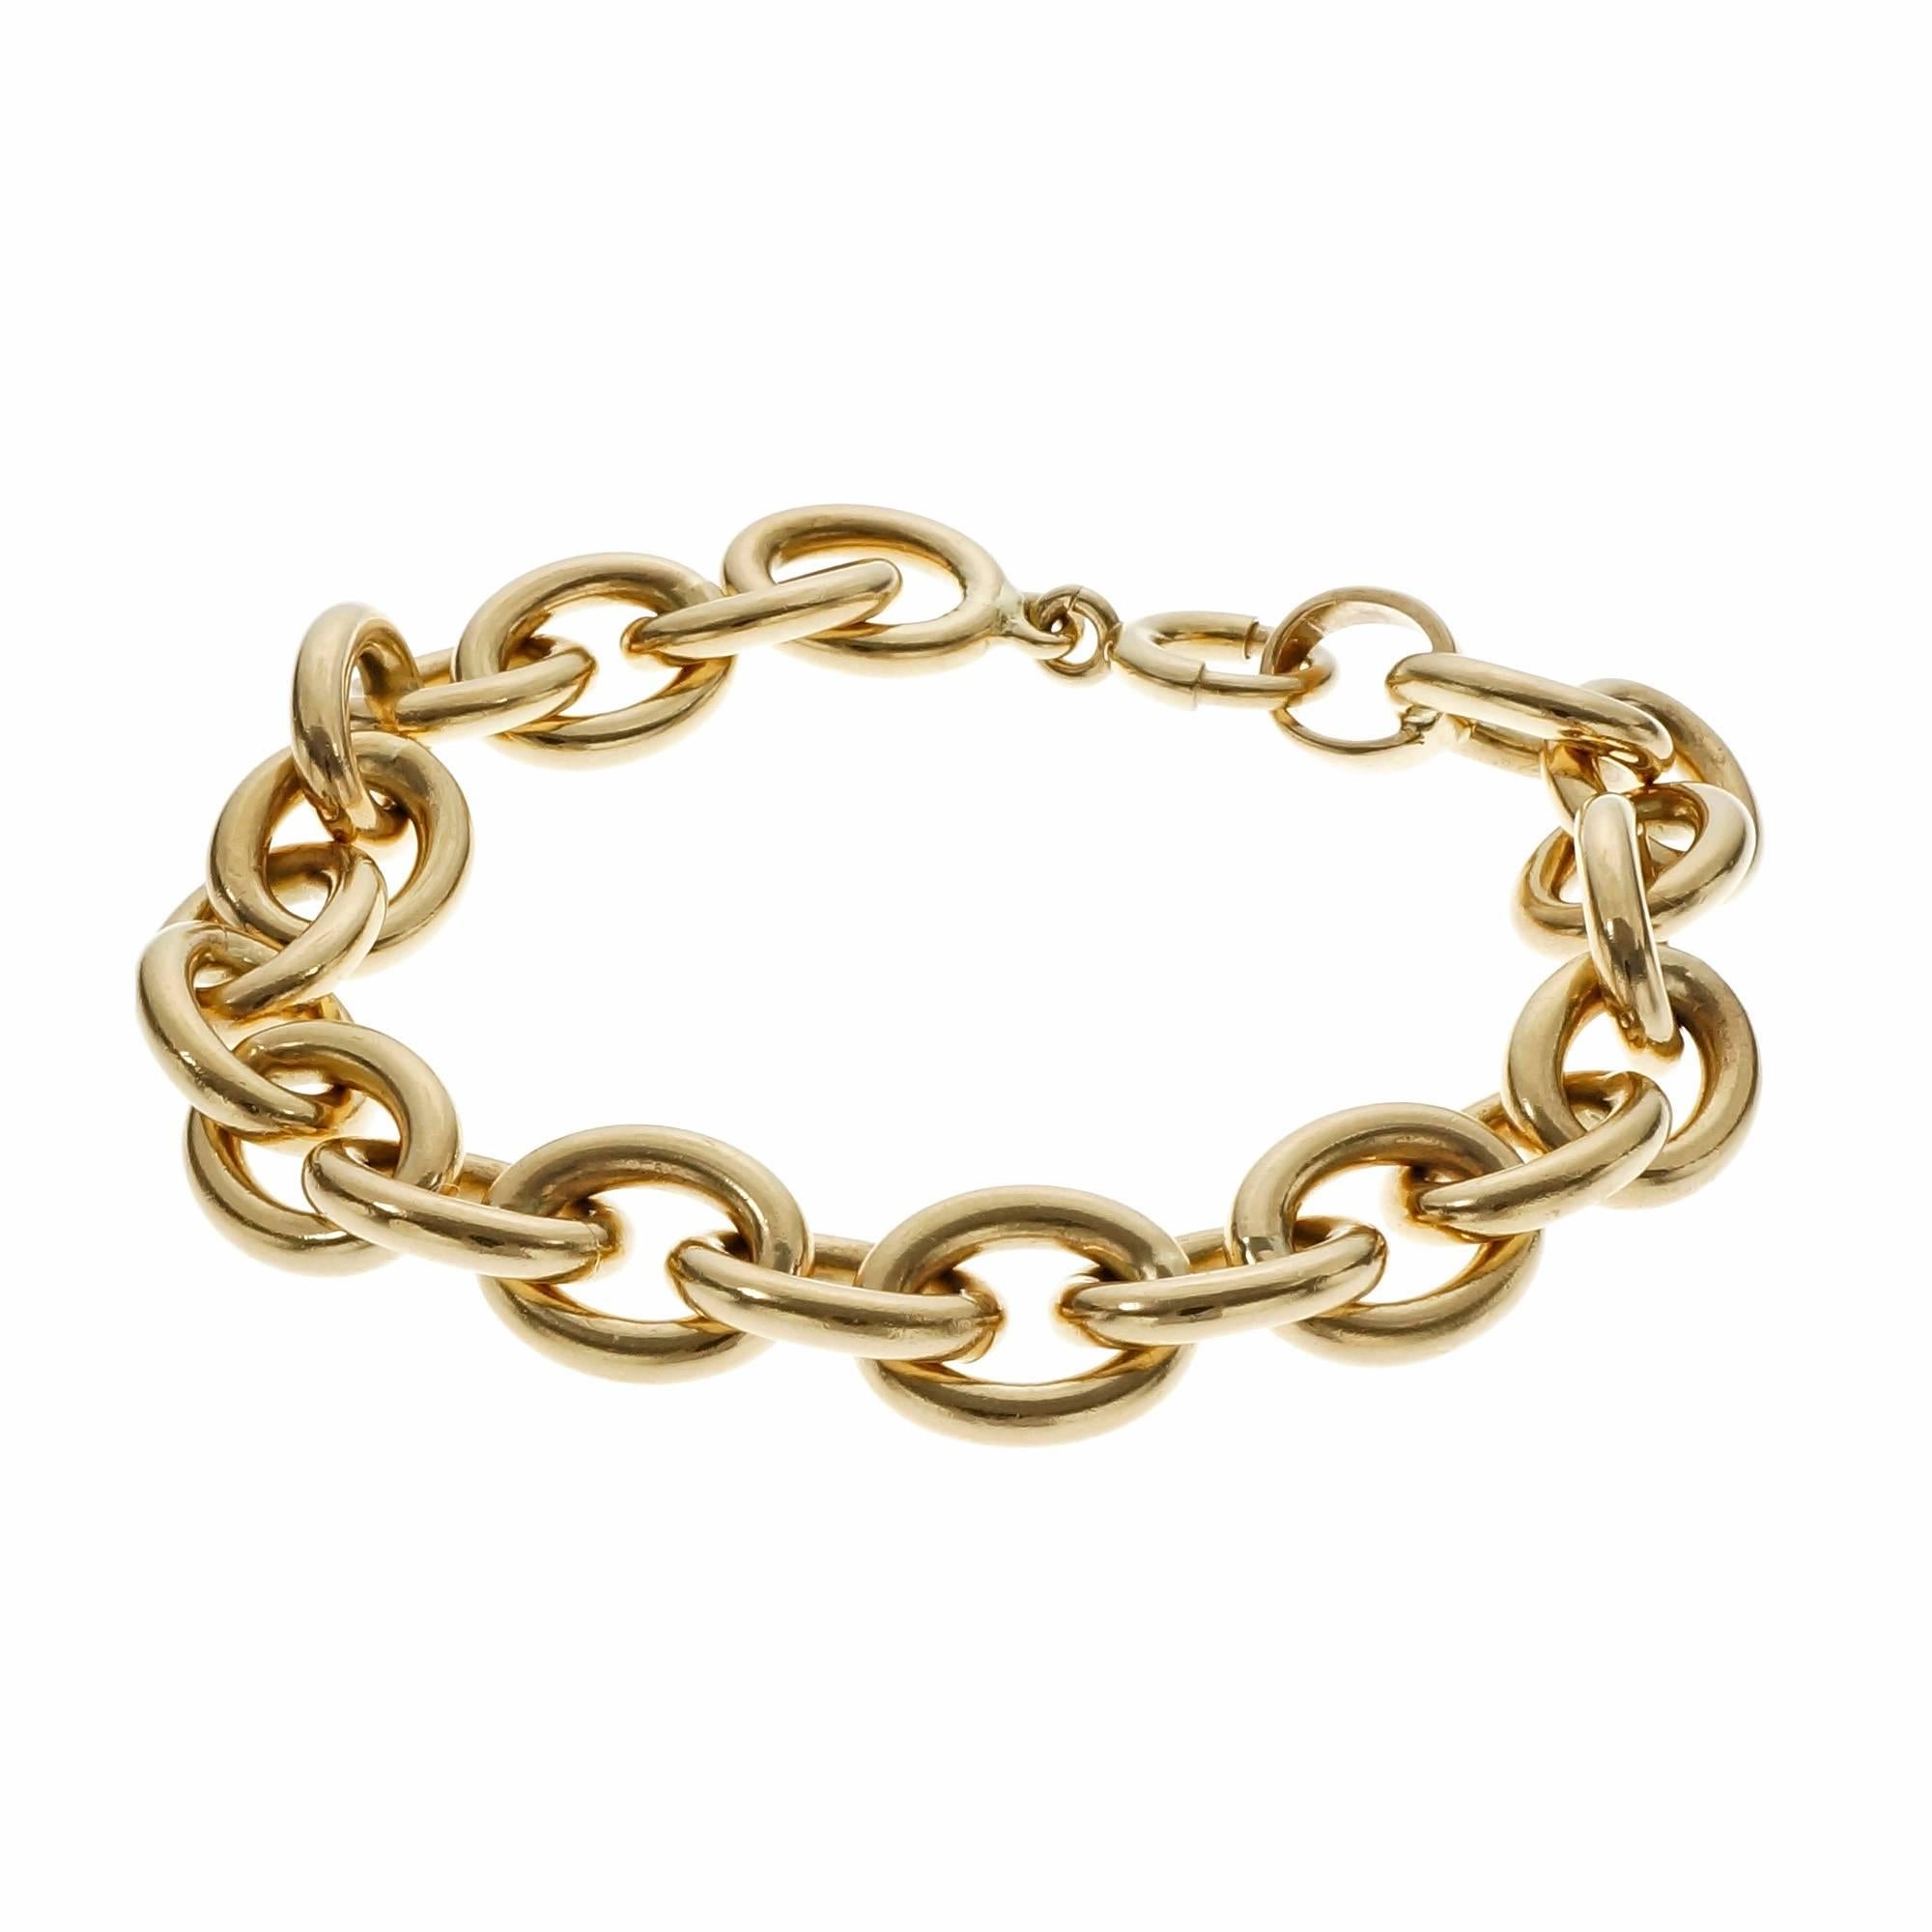 Oval Solid Gold Link Bracelet